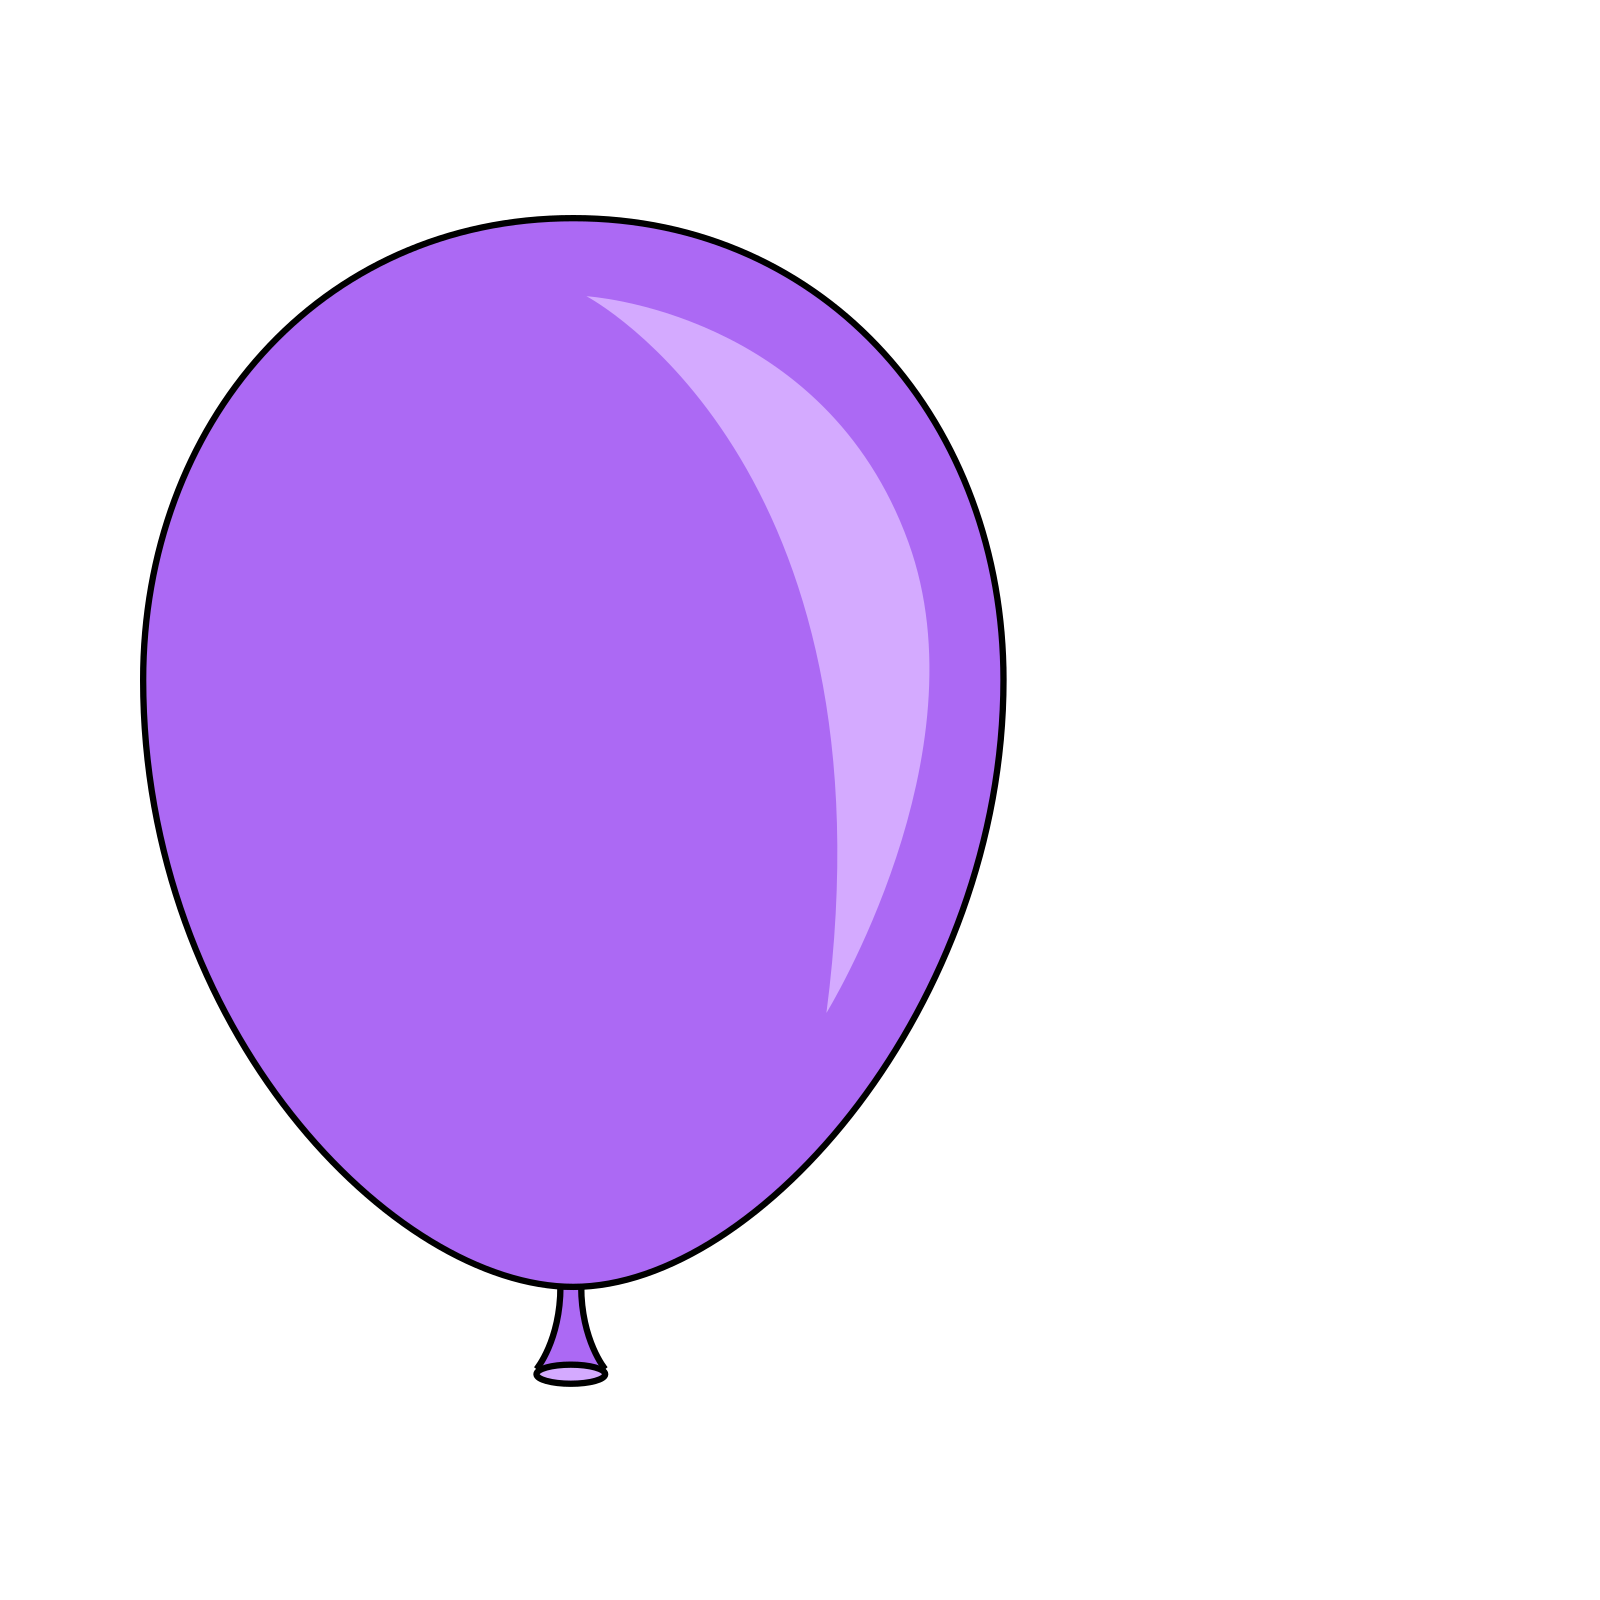 Картинка шар на прозрачном фоне. Воздушные шарики фиолетовые. Шарики на прозрачном фоне. Воздушные шарики на прозрачном фоне. Сиреневый воздушный шарик.